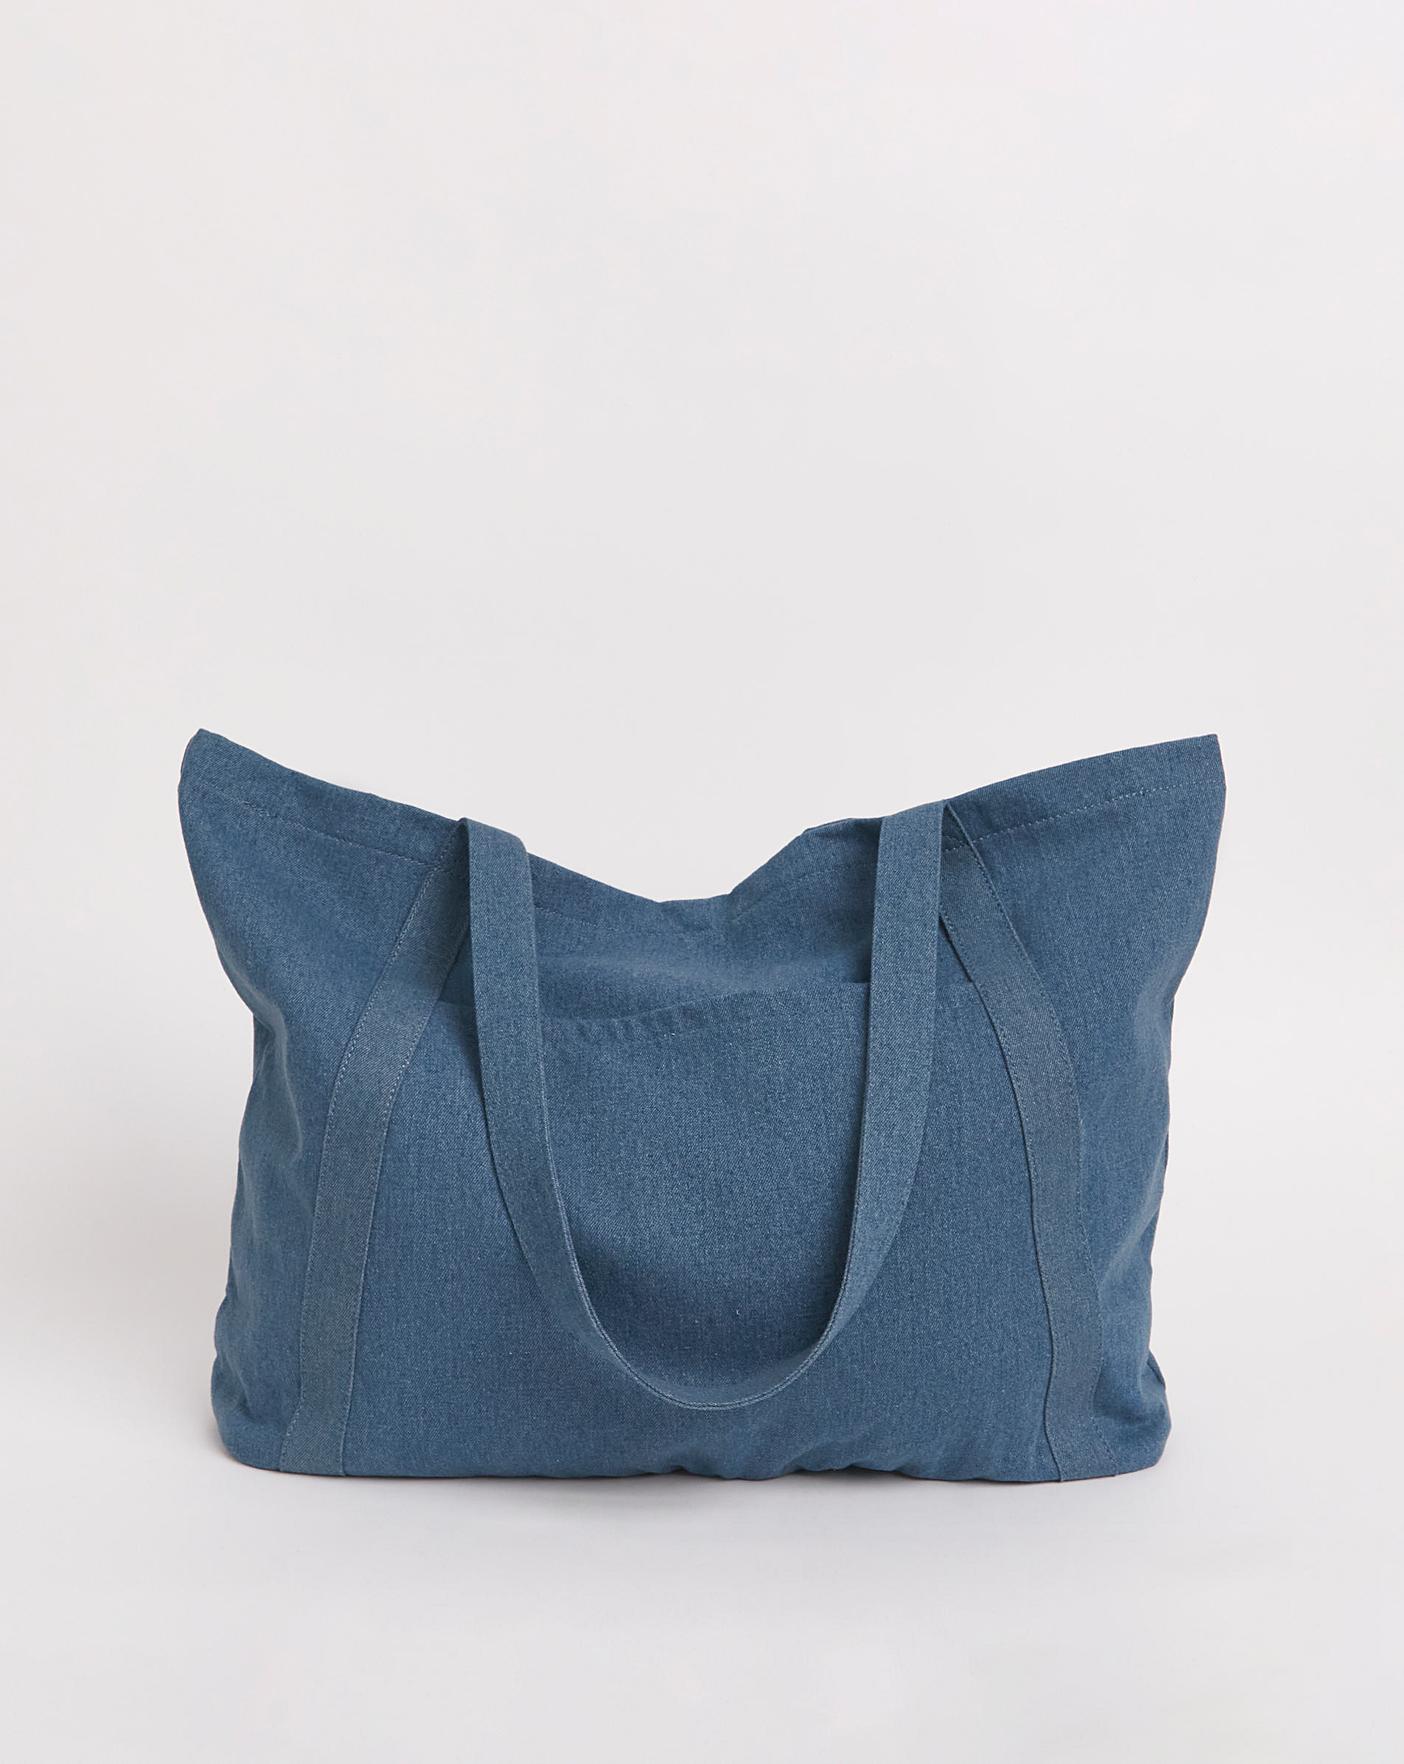 Denim Patchwork Tote Bag, Handmade Recycled Denim Boho Shoulder Bag,  Weekend Bag, Oversized Denim Bag, One of a Kind - Etsy | Recycled denim, Denim  bag patterns, Denim bag